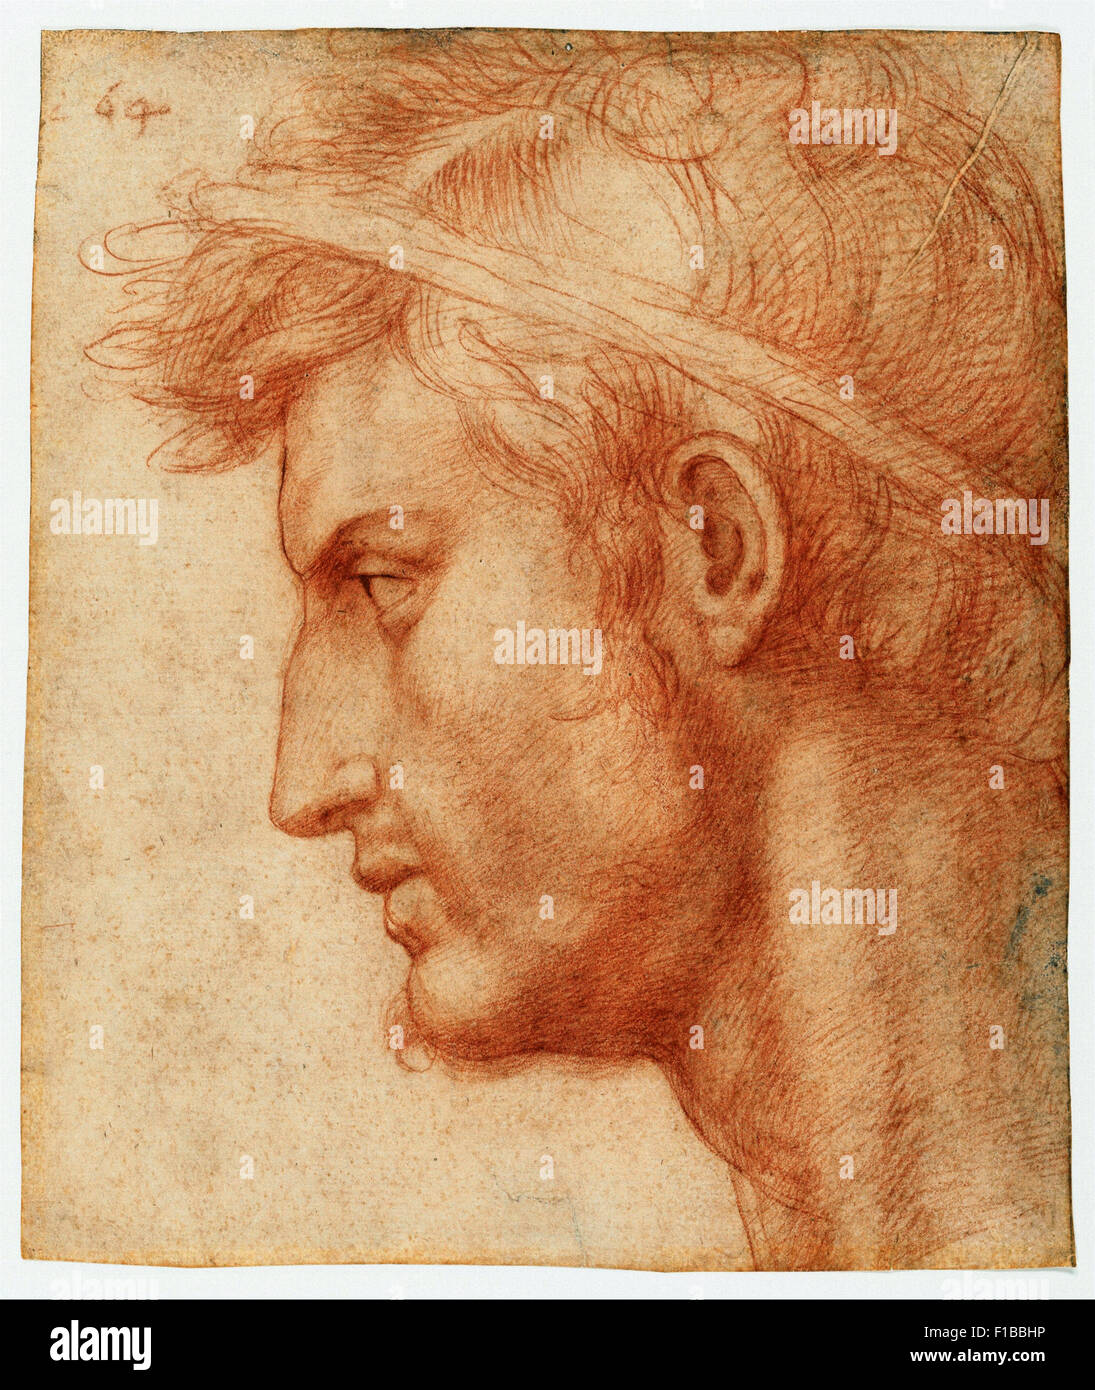 Andrea del Sarto - Study for the Head of Julius Caesar Stock Photo